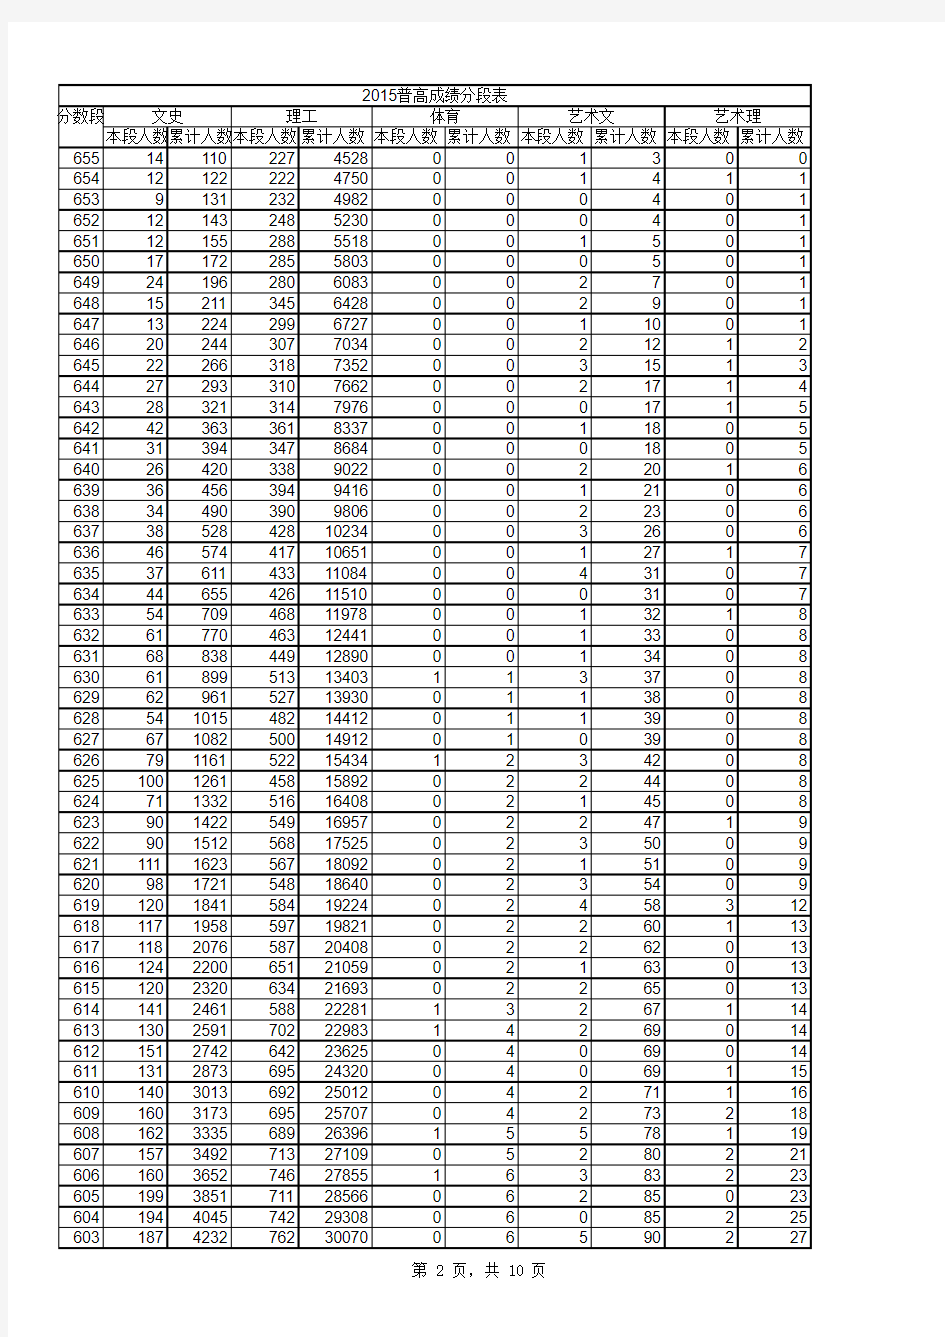 2003-2015年山东省普通高考成绩分段表电子表格版